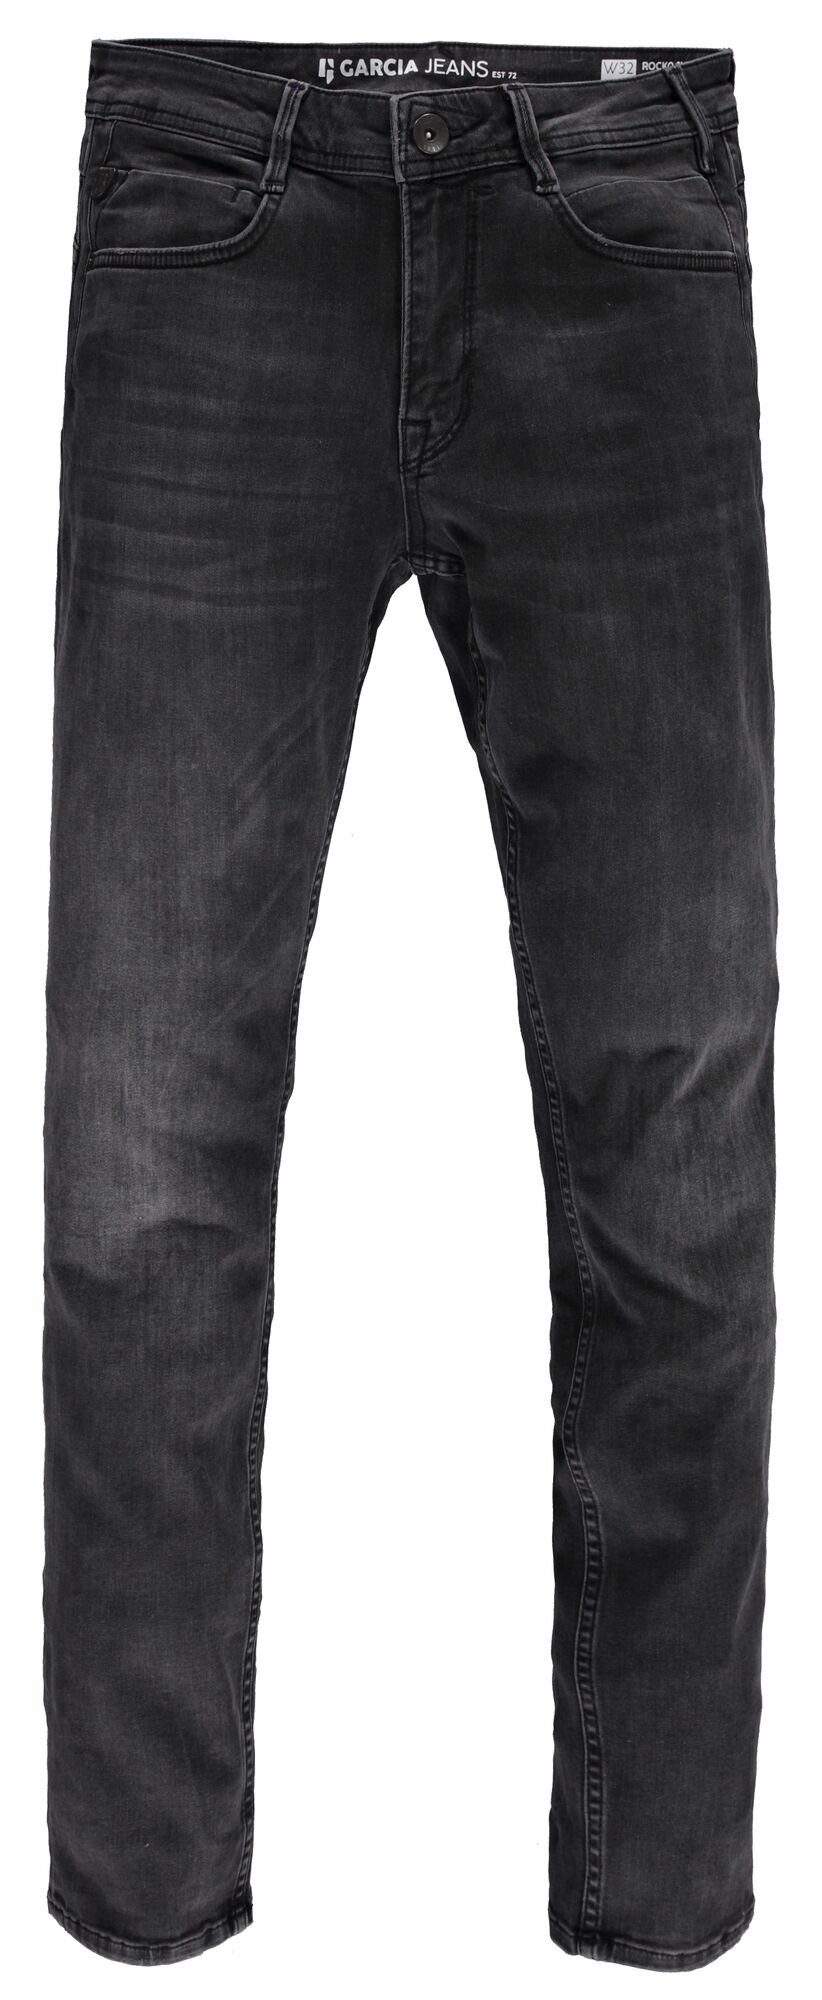 GARCIA JEANS 5-Pocket-Jeans GARCIA ROCKO grey dark used 690.6080 schwarz